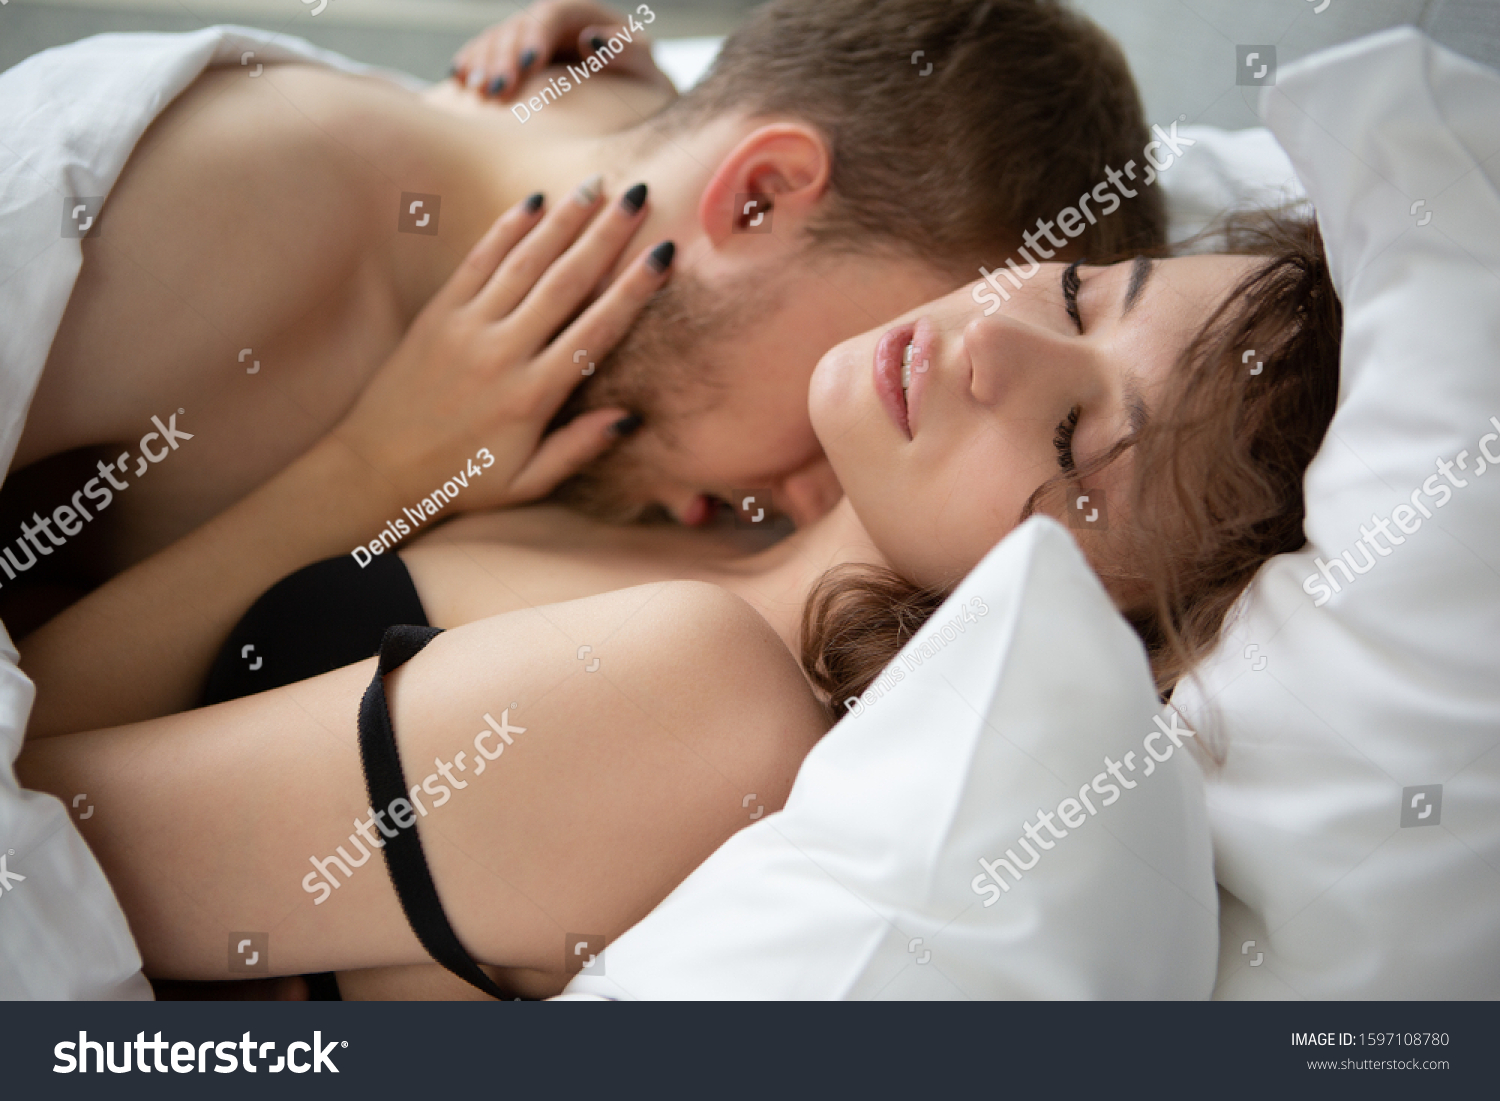 Woman neck erotic